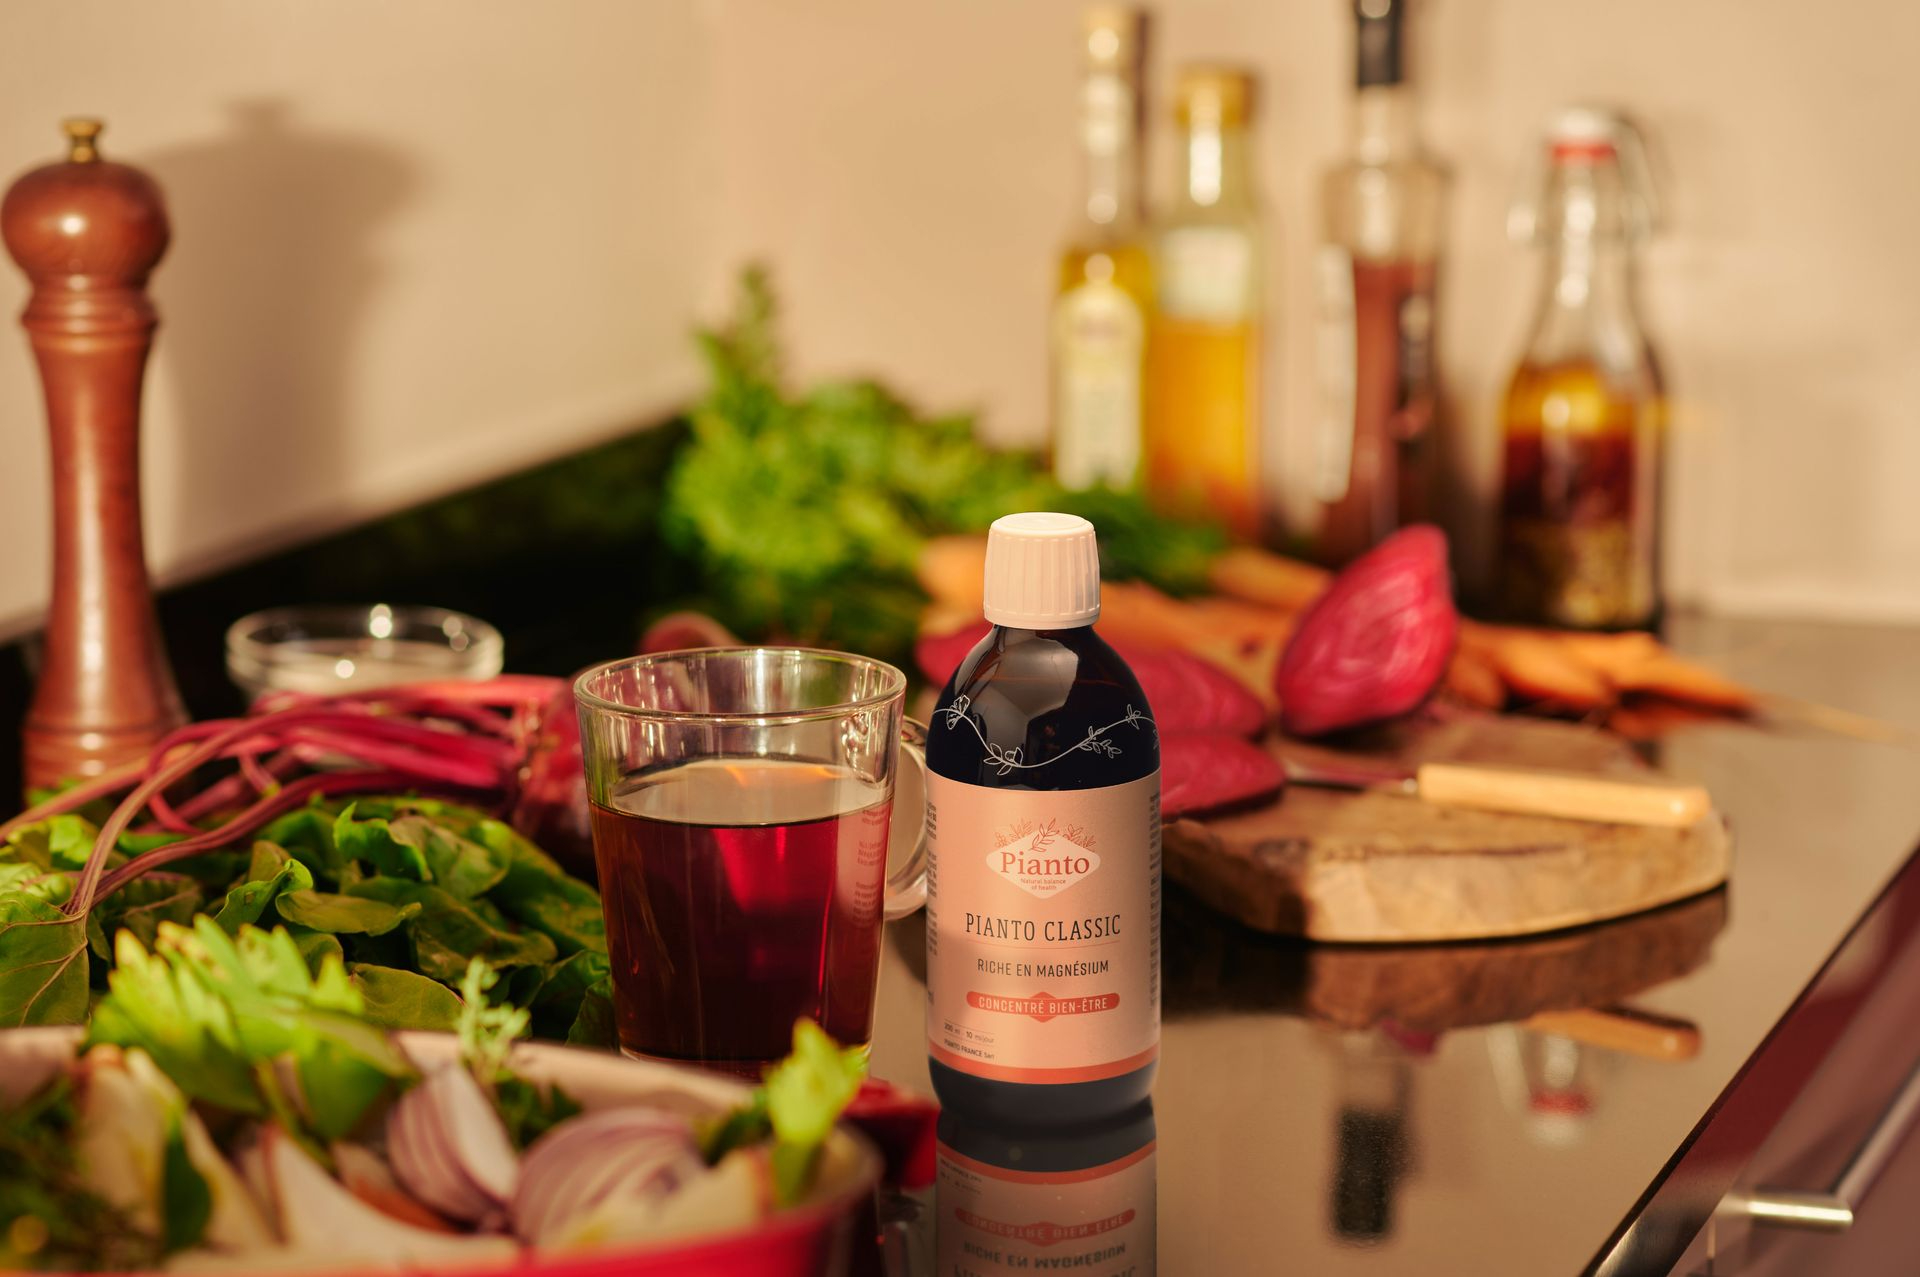 Flacon de Pianto CLASSIC dans une cuisine à côté d'un verre de jus de betterave et de légumes